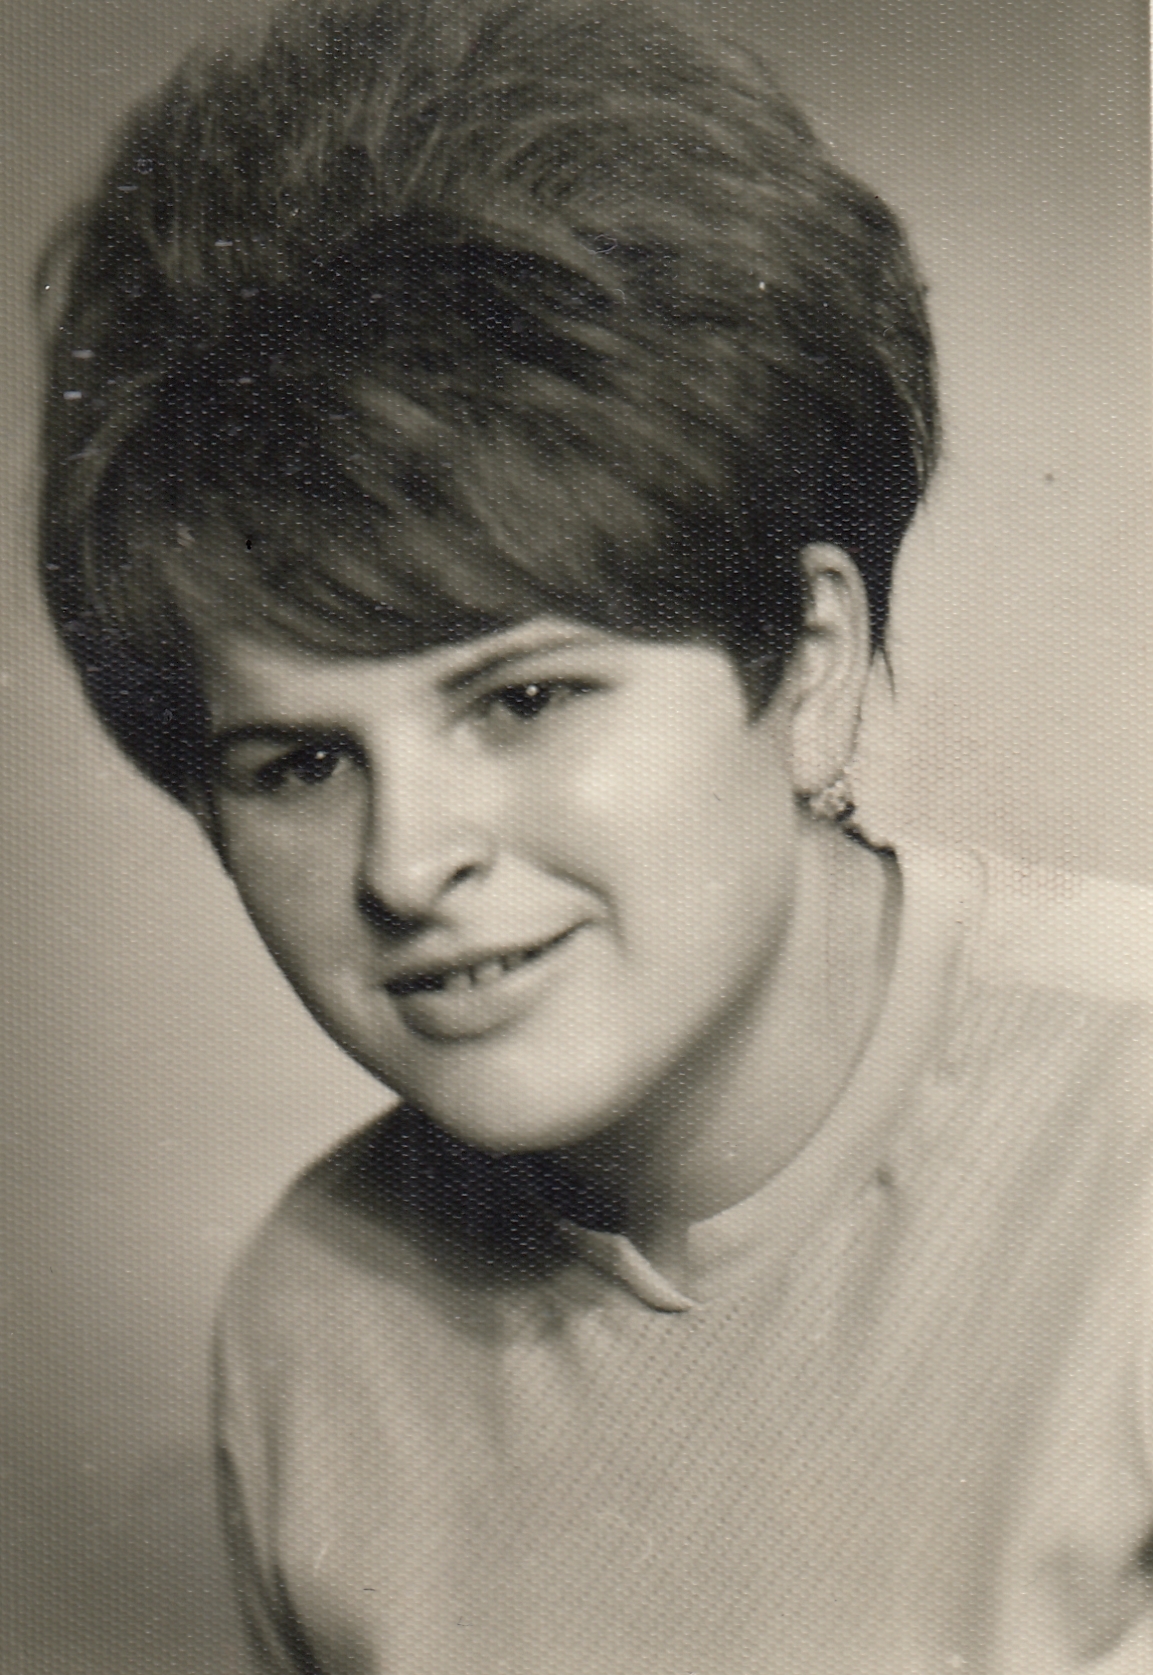 Zdena Bartoníková (née Končická) in 1968